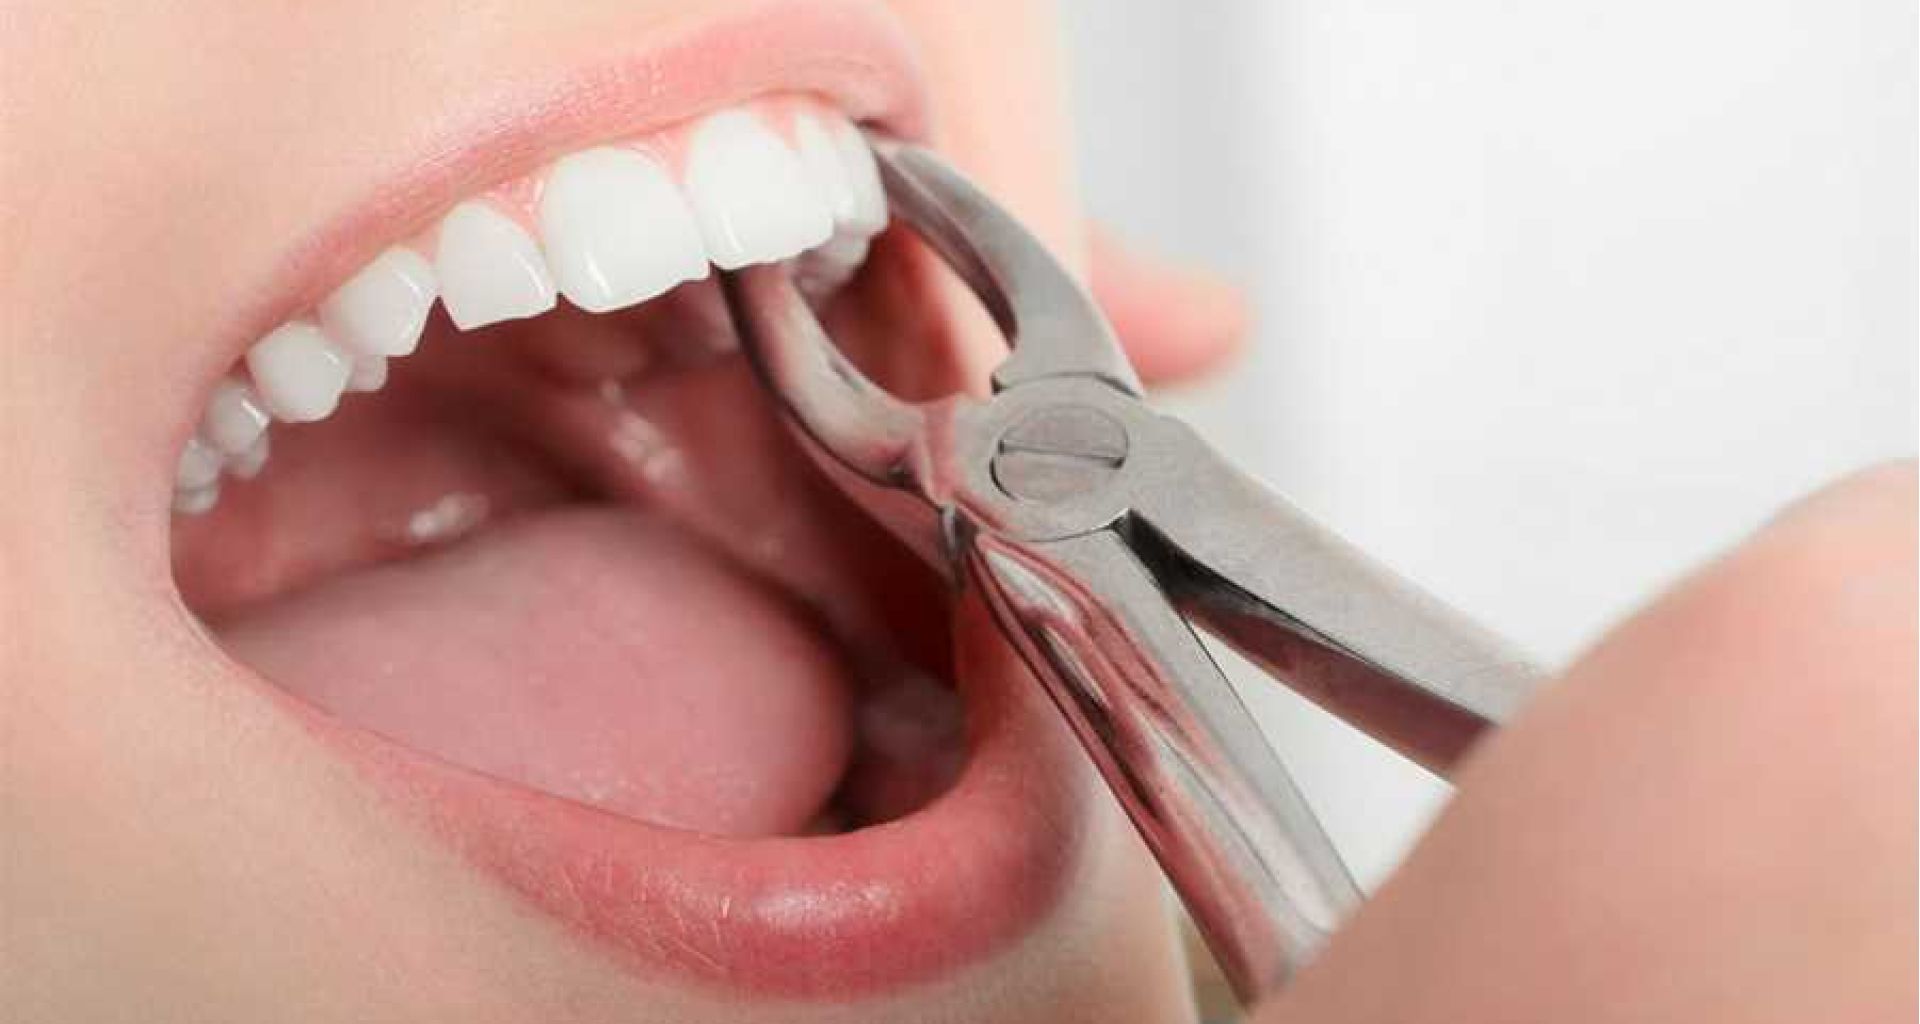 التعامل الآمن مع الأسنان المنزوعة